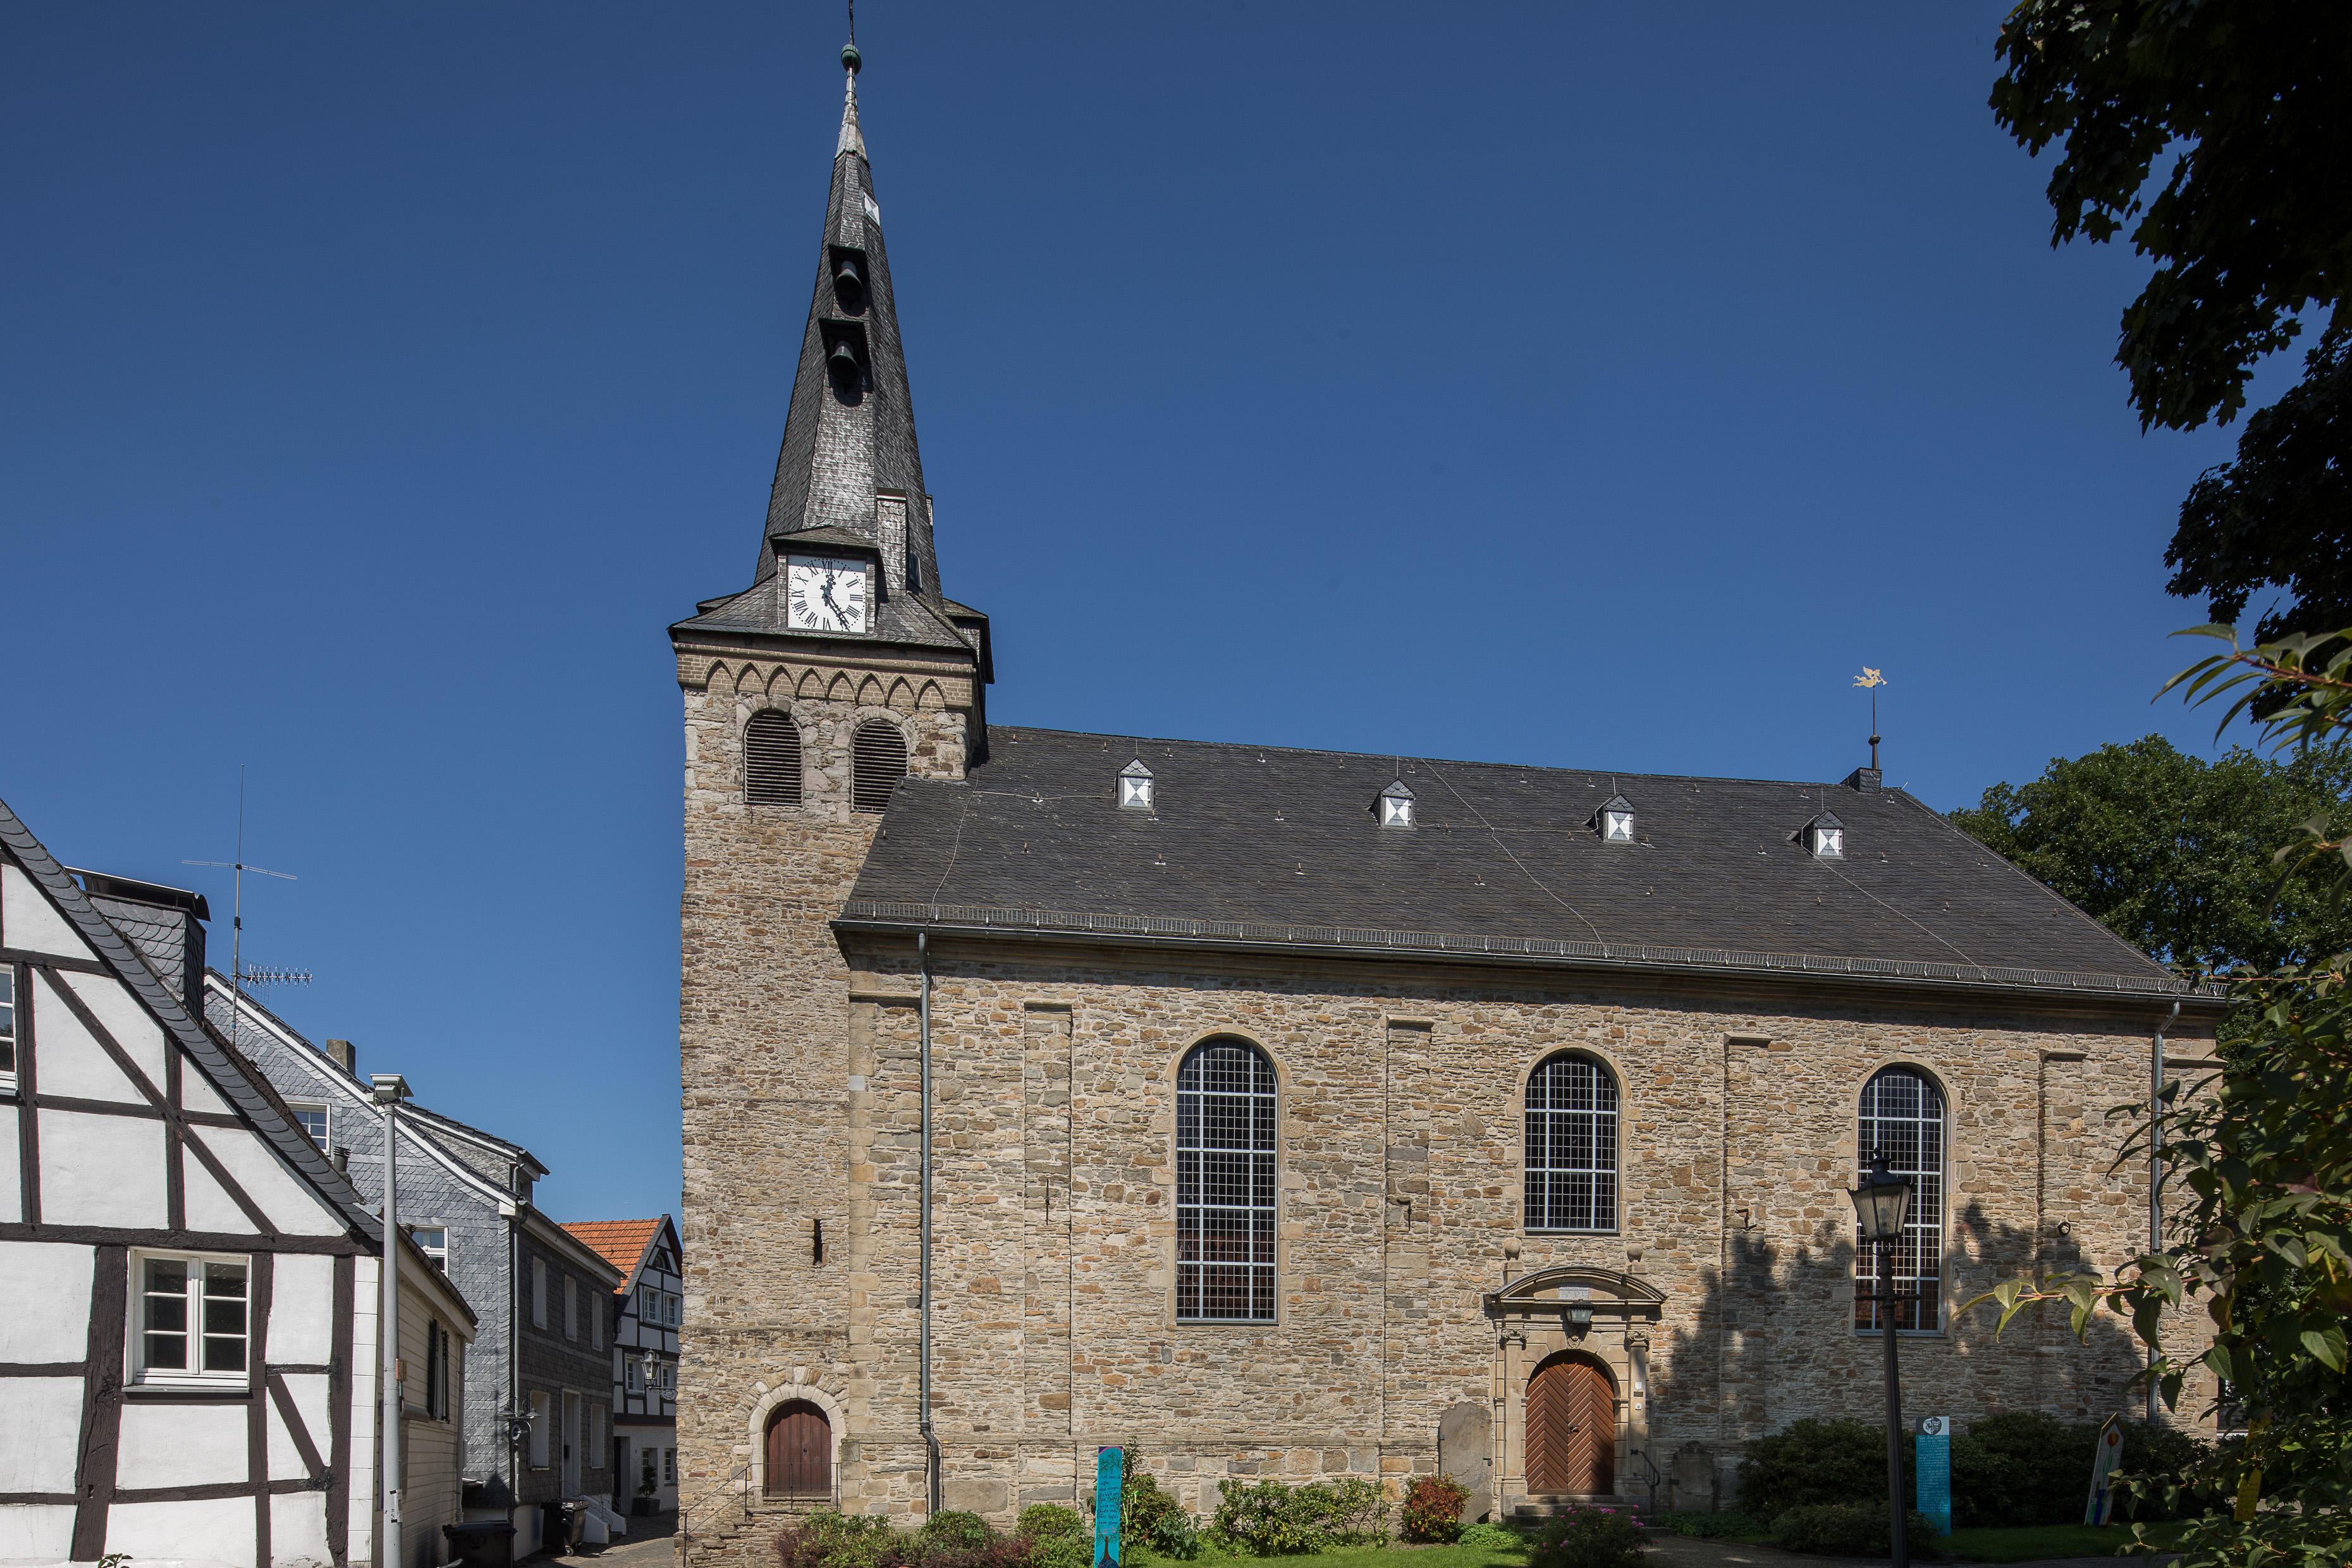 Bild 1 Kirche Kettwig - Evangelische Kirchengemeinde Essen-Kettwig in Essen